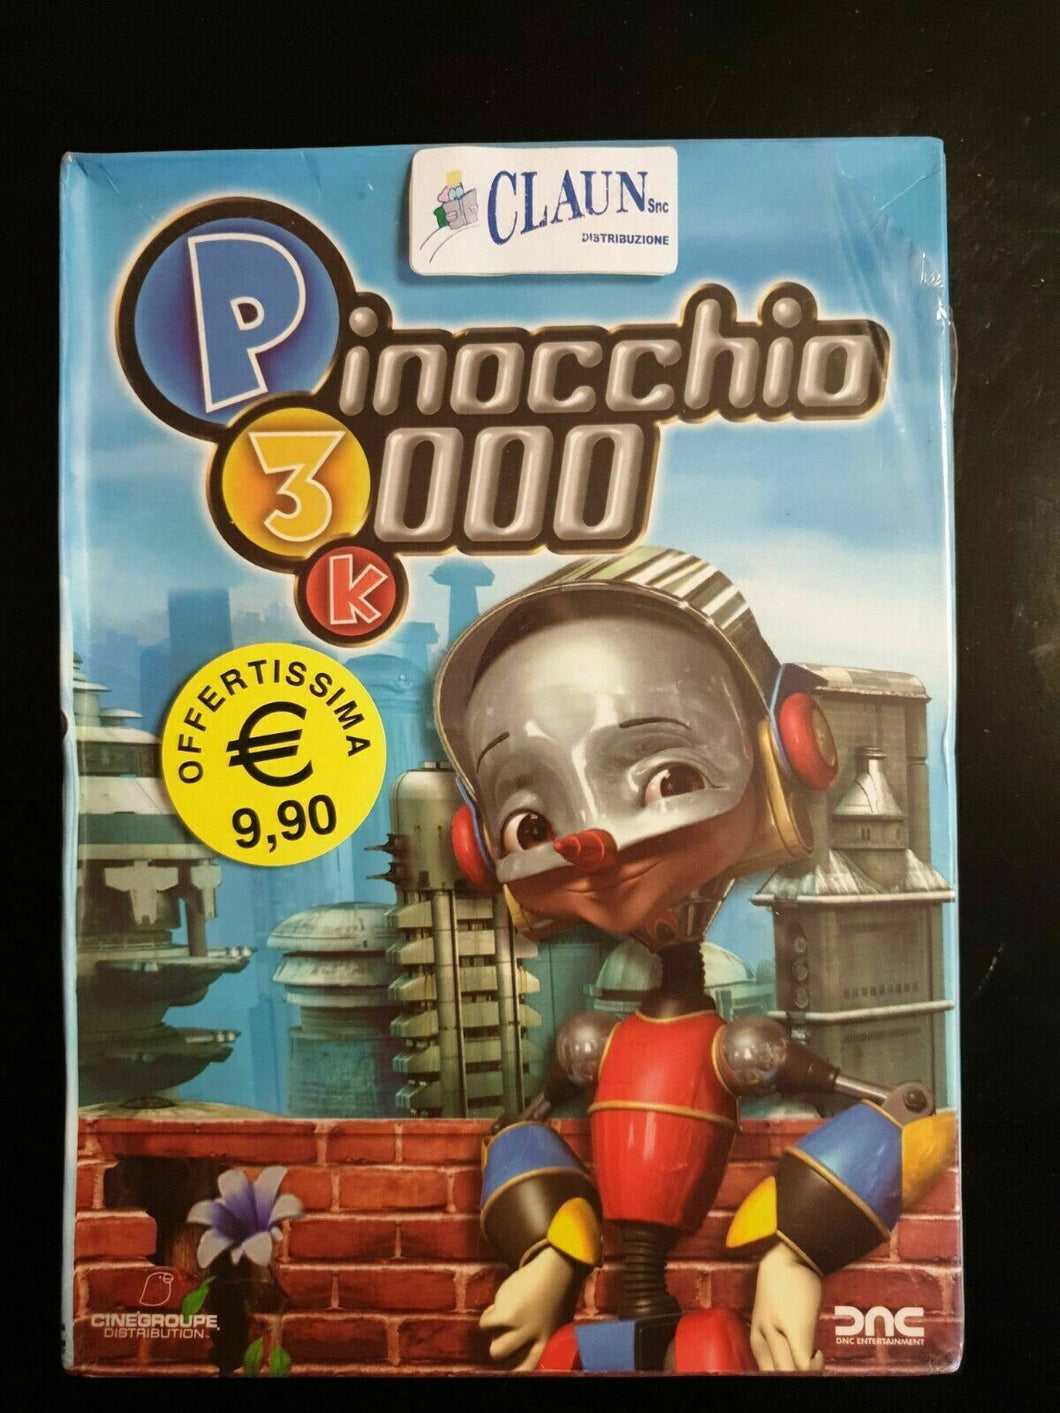 Pinocchio 3000 (2004) DVD Nuovo